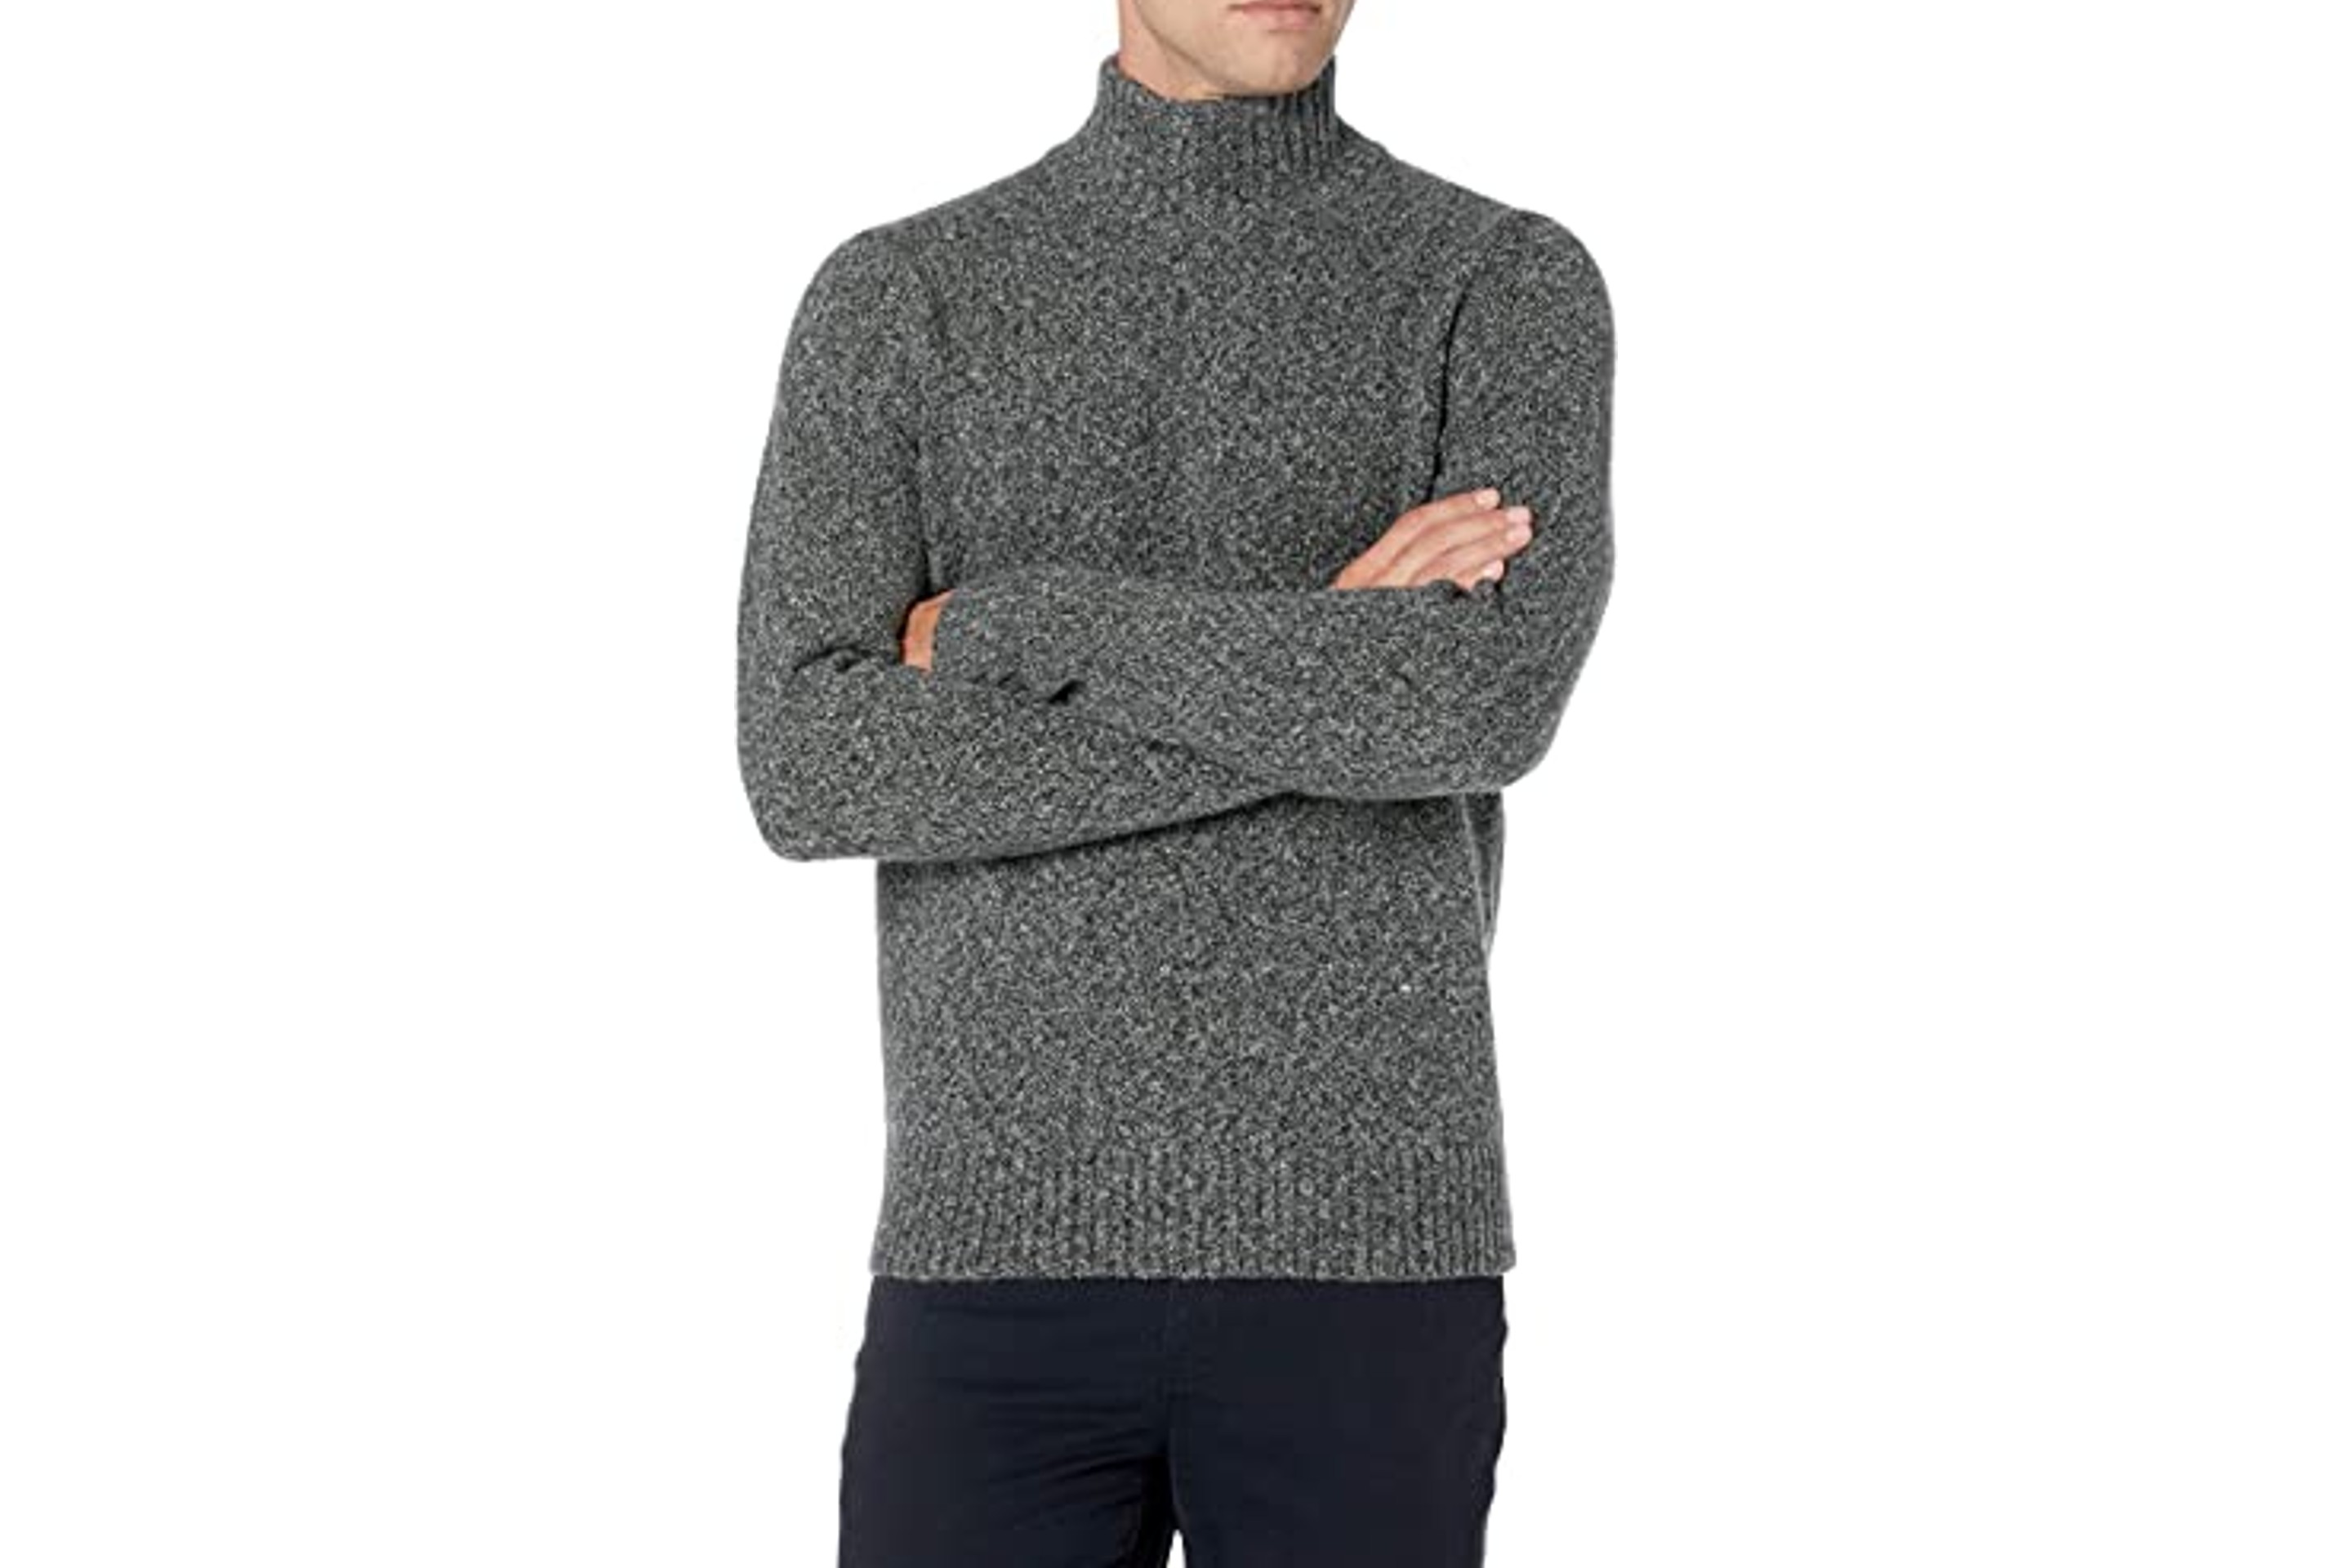 Menâs Long-Sleeve Soft Touch Turtleneck Sweater